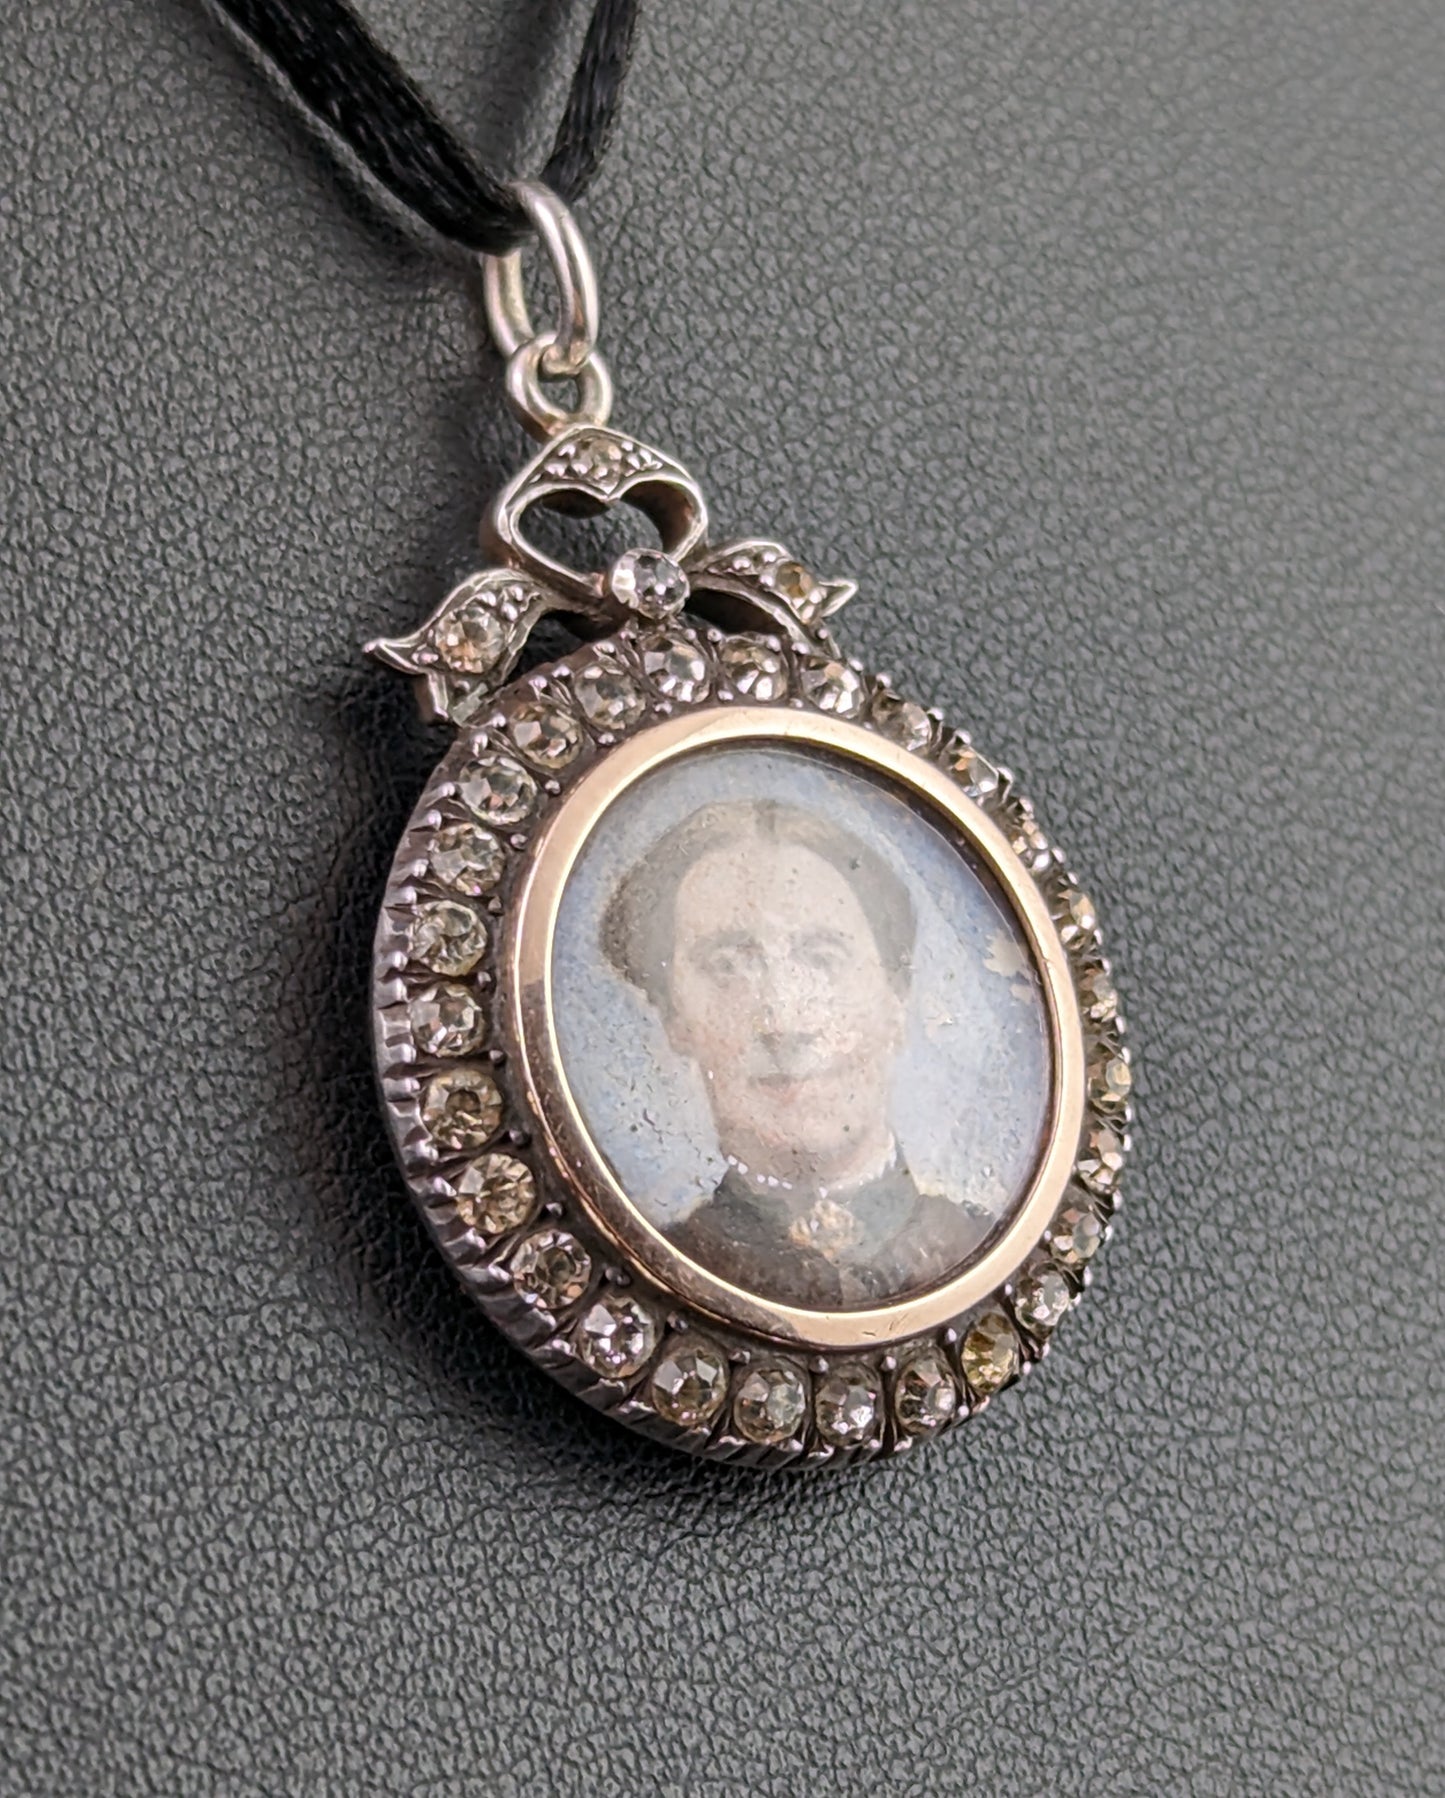 Antique paste locket pendant, portrait, 900 silver